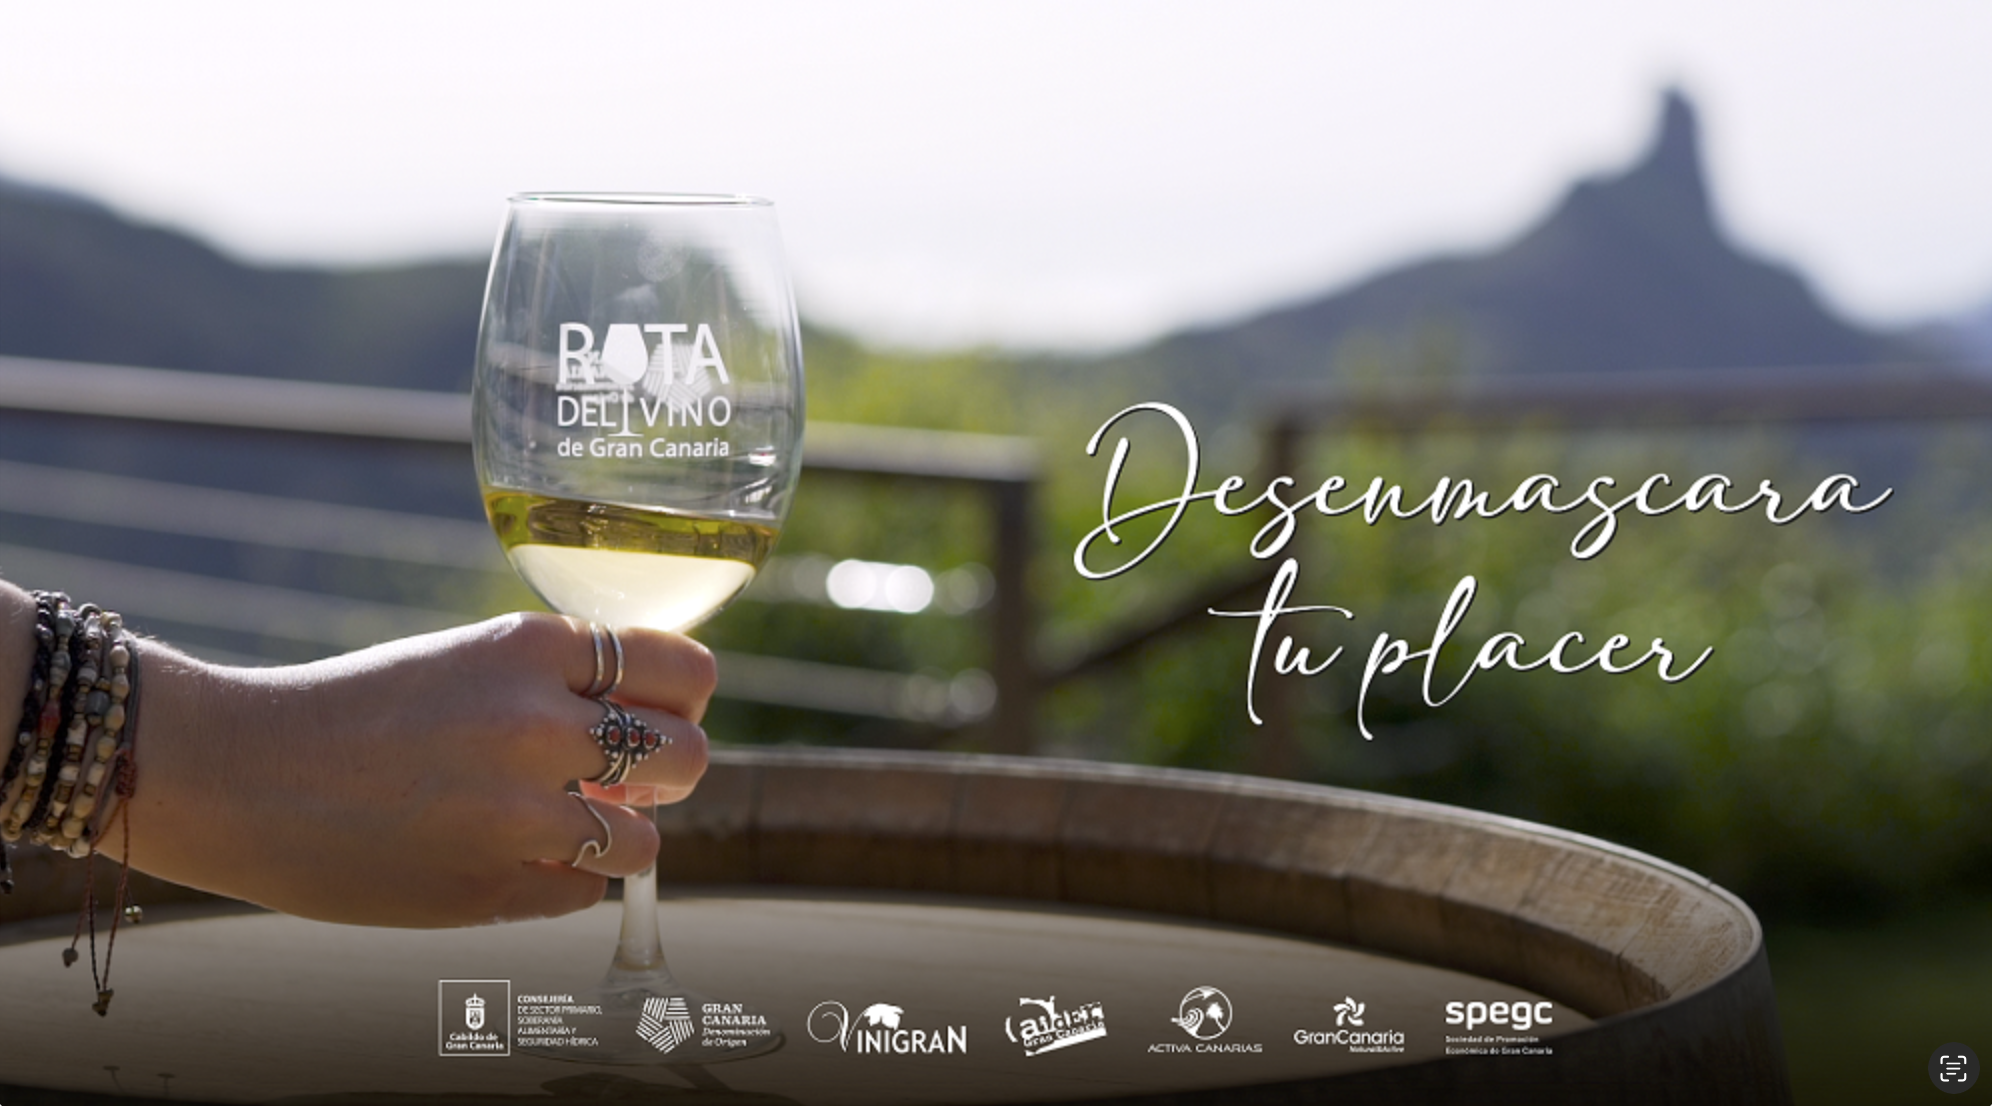 La Ruta del Vino de Gran Canaria invita a “desenmascarar” el placer en su nuevo spot